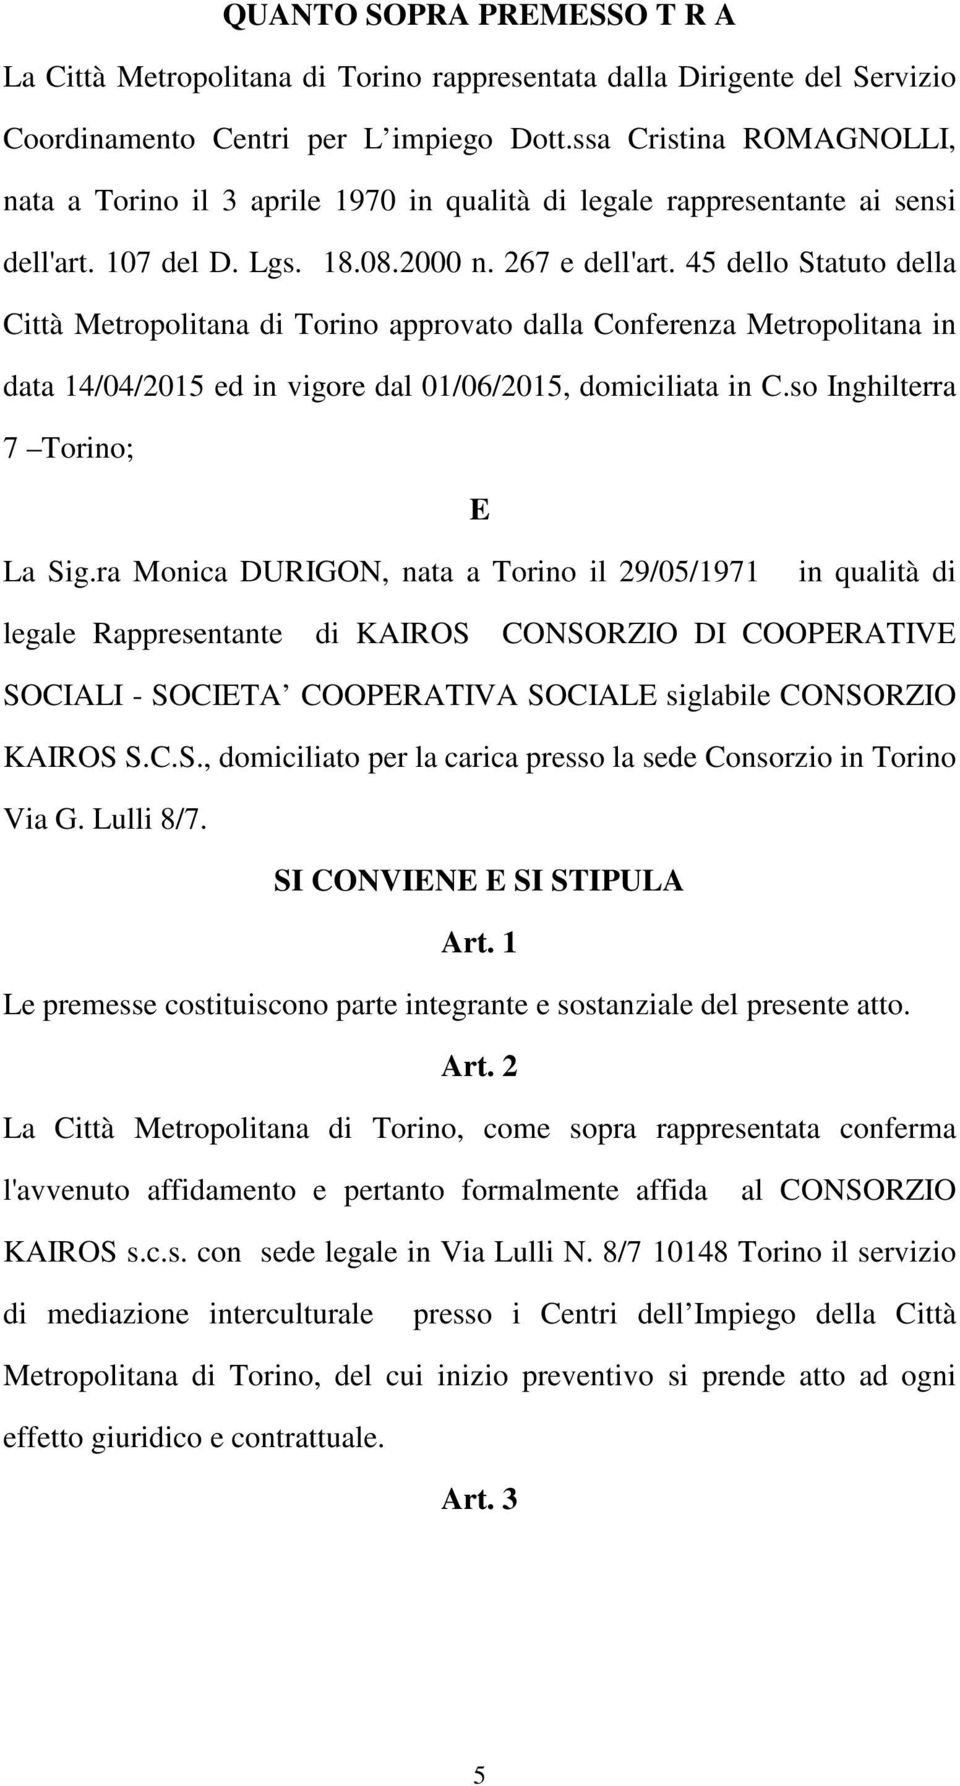 45 dello Statuto della Città Metropolitana di Torino approvato dalla Conferenza Metropolitana in data 14/04/2015 ed in vigore dal 01/06/2015, domiciliata in C.so Inghilterra 7 Torino; E La Sig.